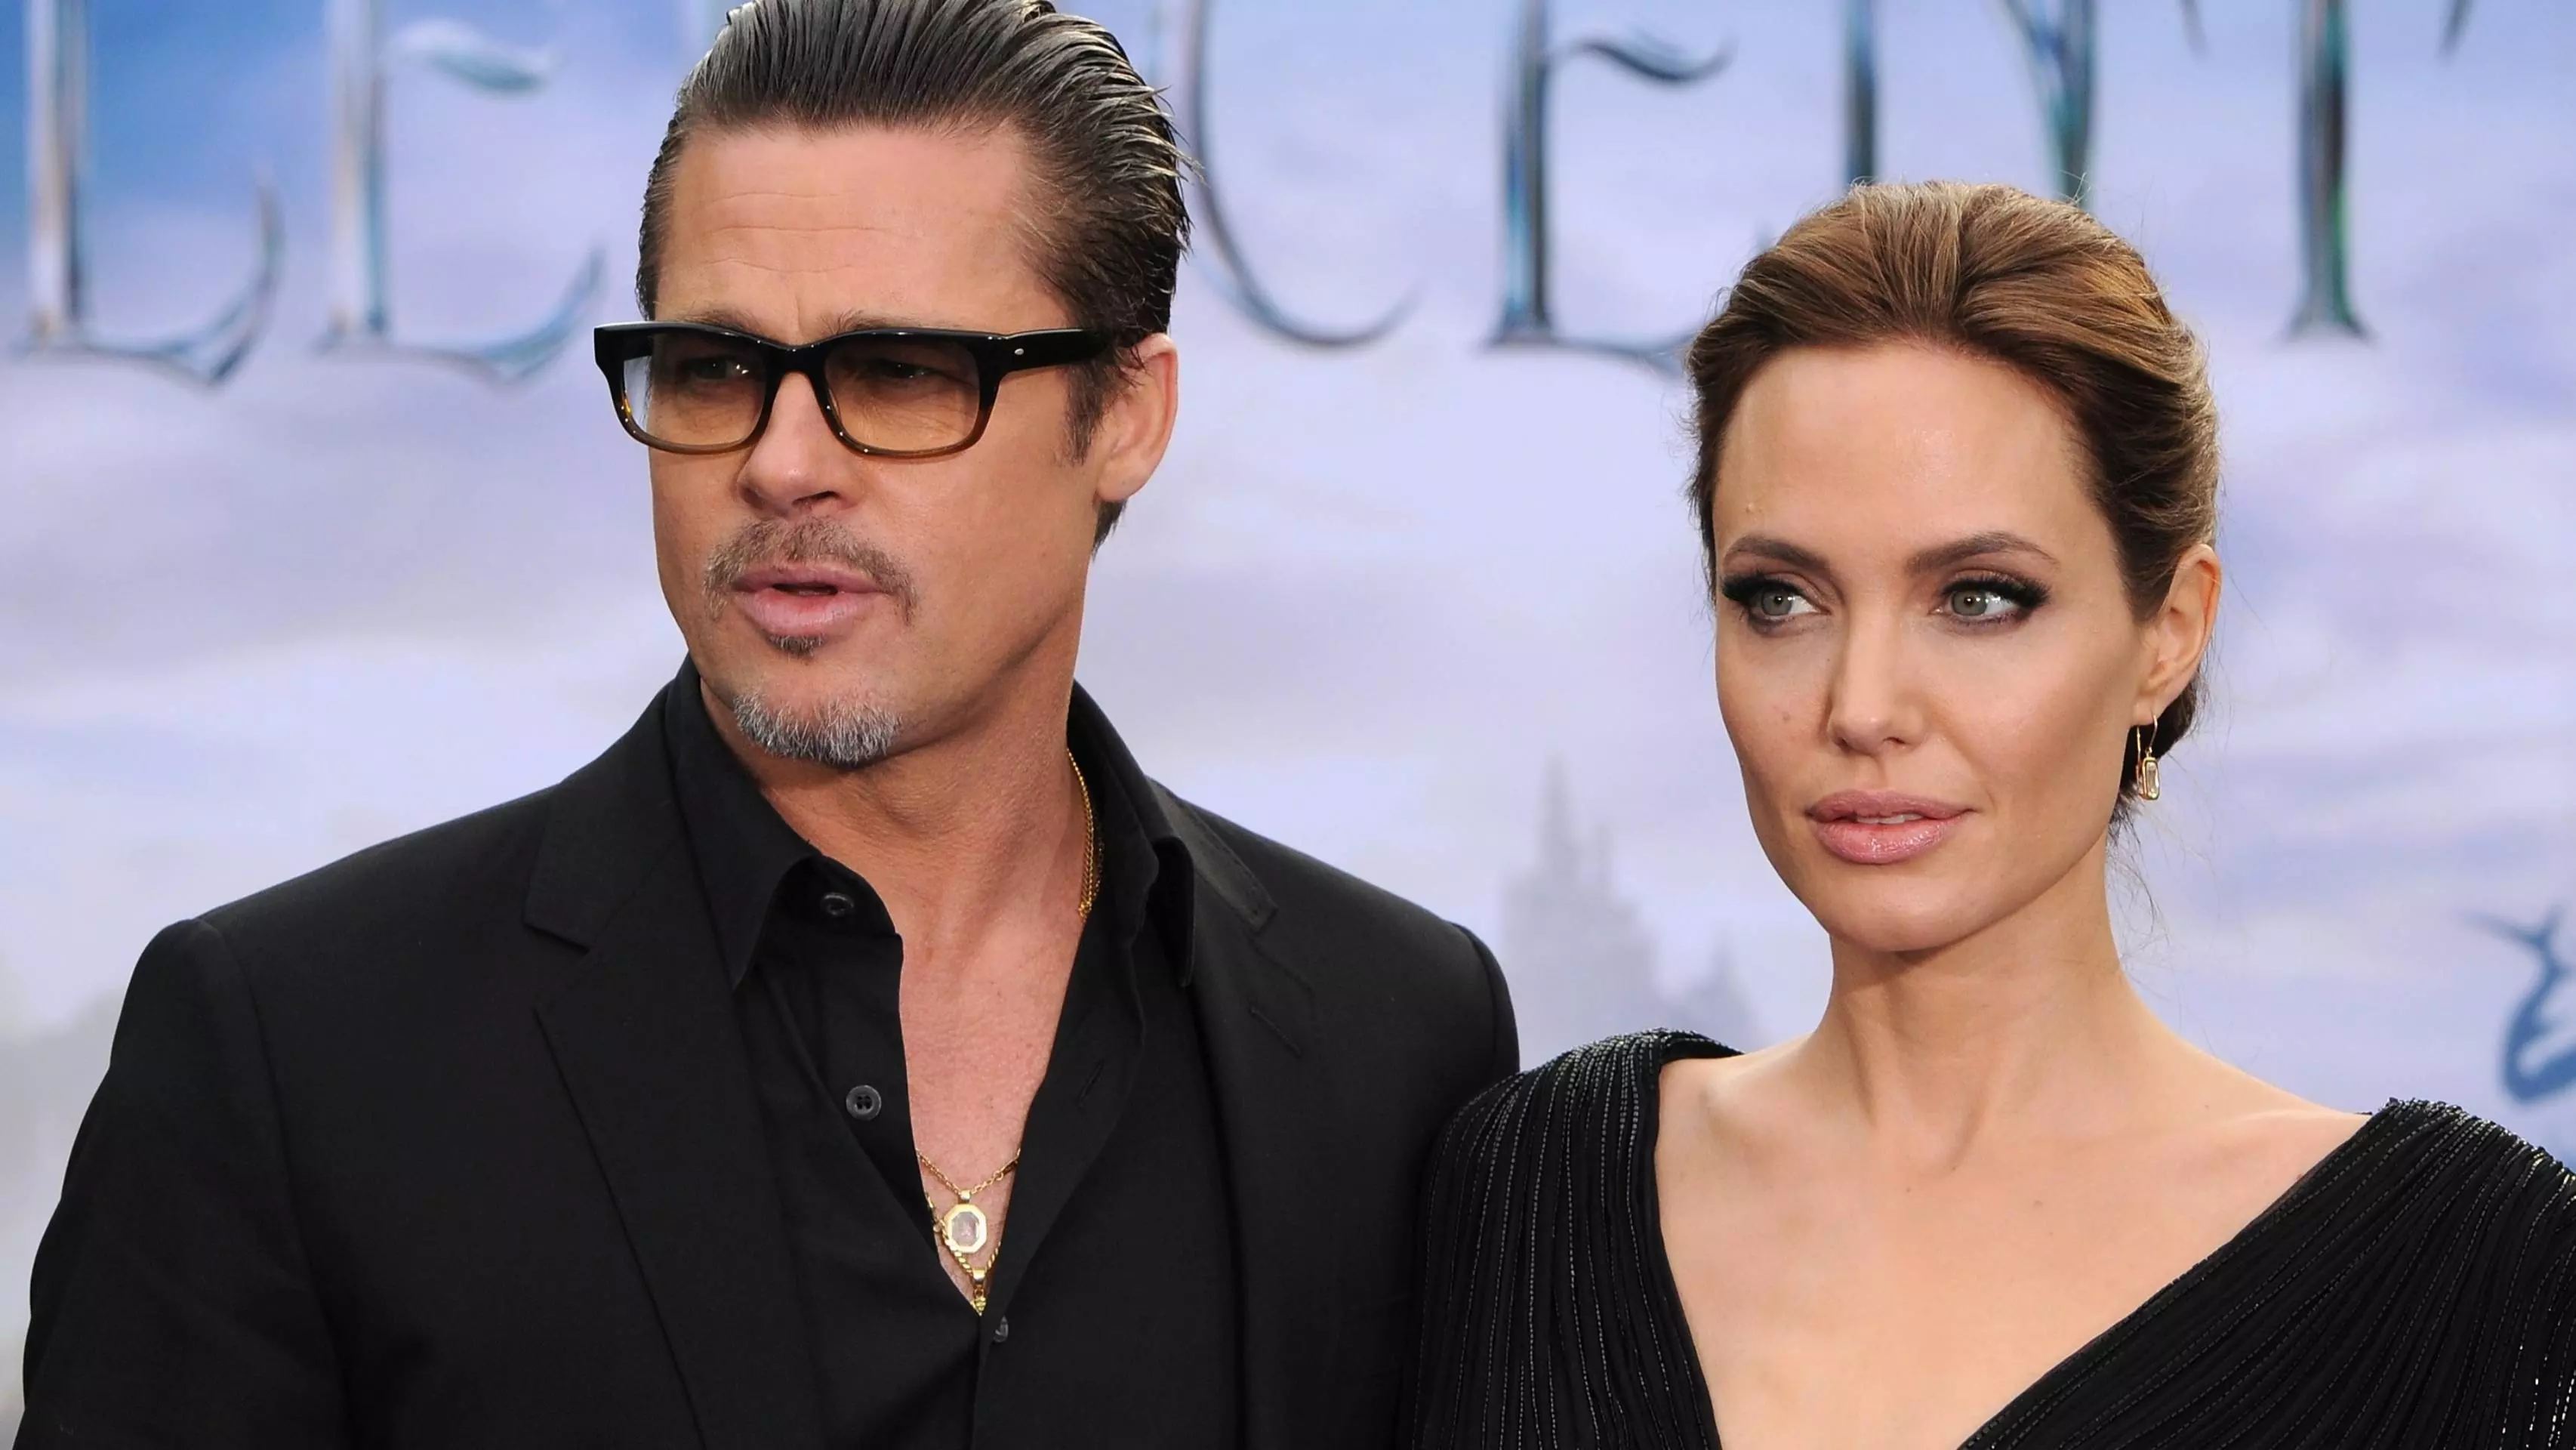 Къде е истината: Анджелина Джоли иска да изсмуче всички пари на Брад Пит или обратното?